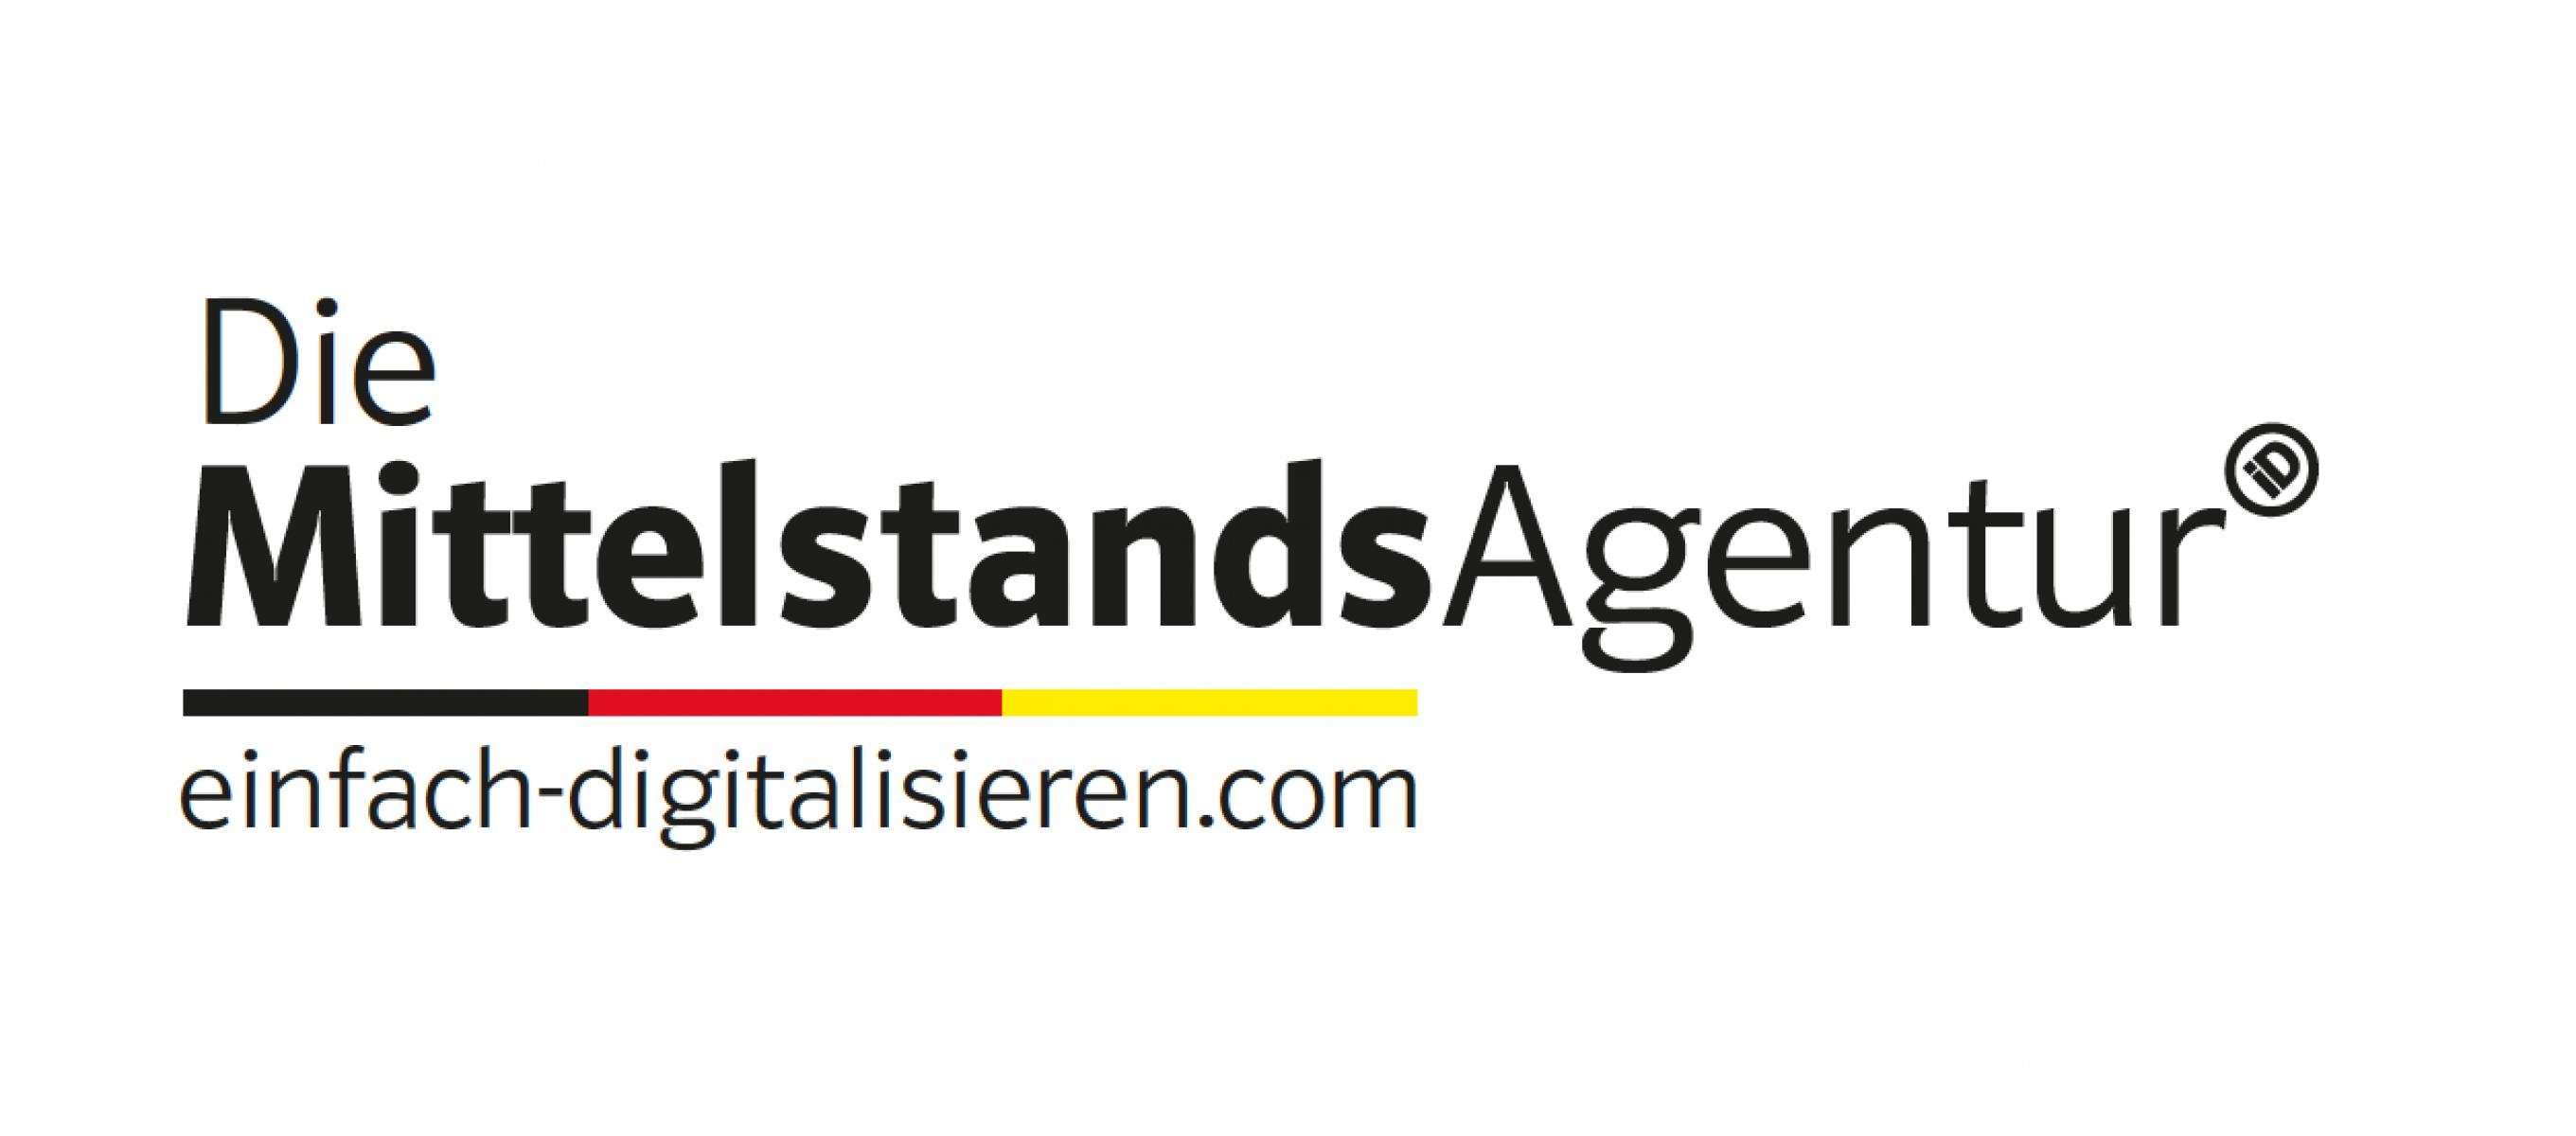 MittelstandsAgentur GmbH & Co. KG Logo